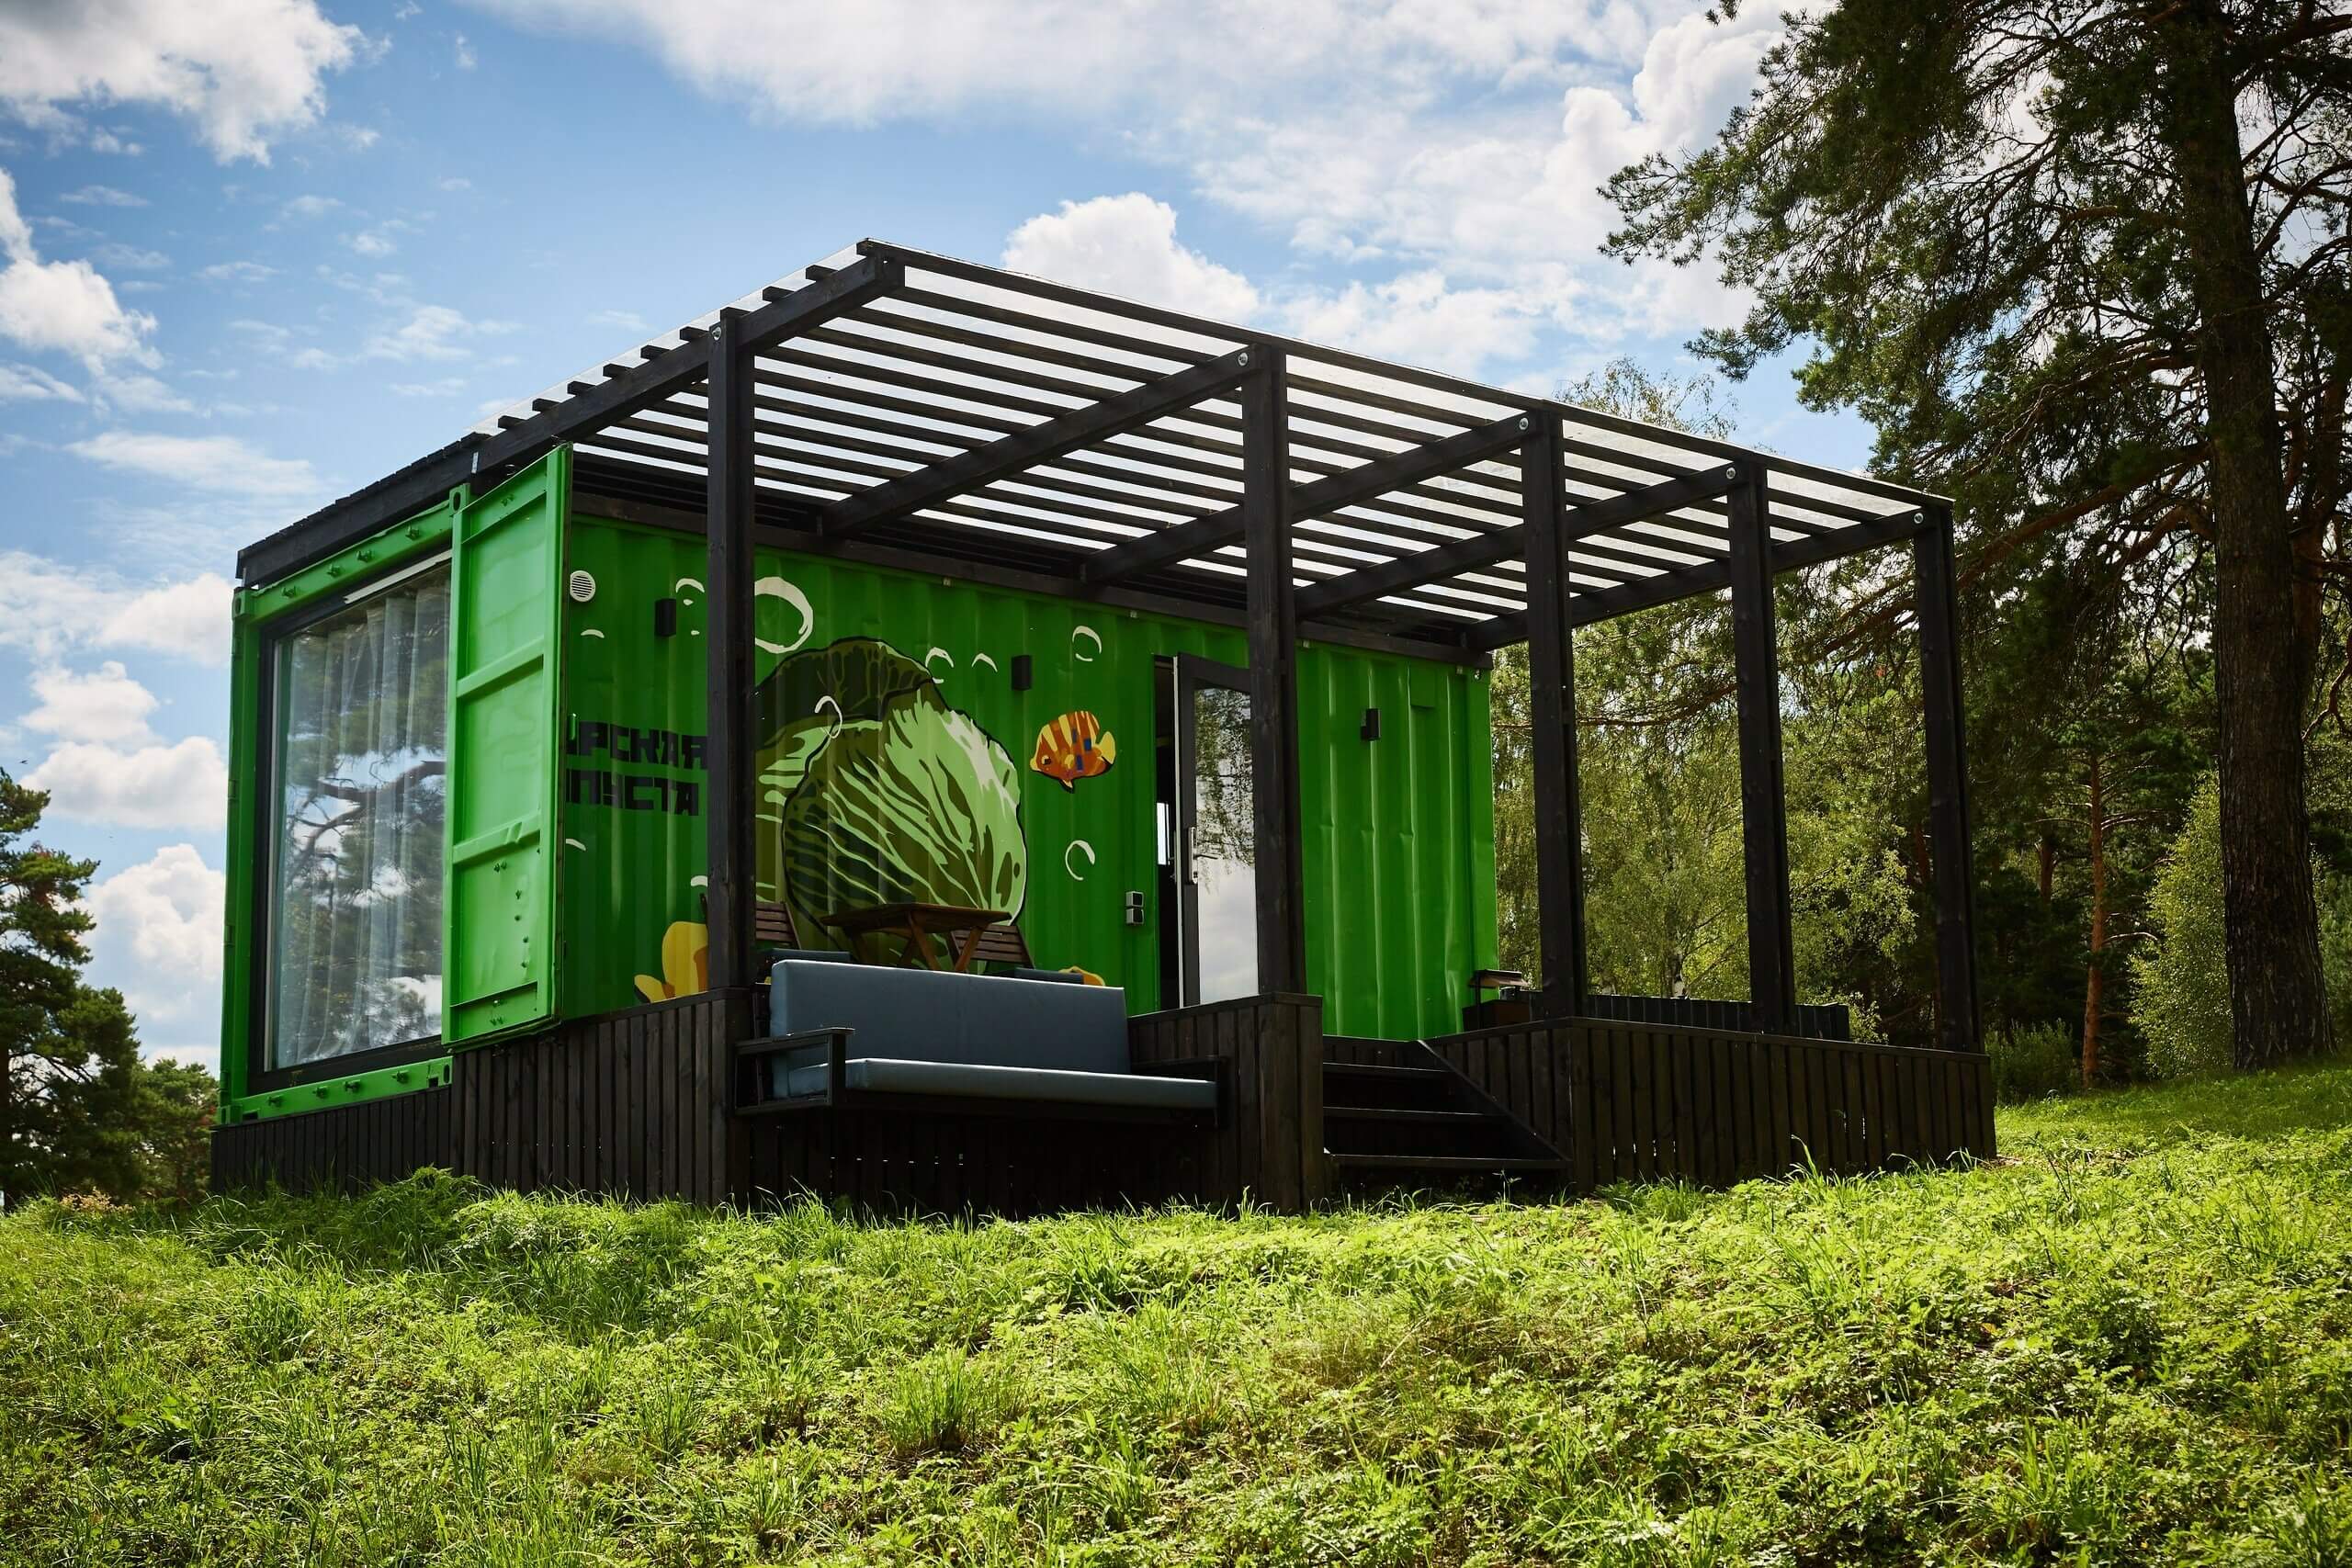 Фасад домика-контейнера выкрашен в зеленый цвет.